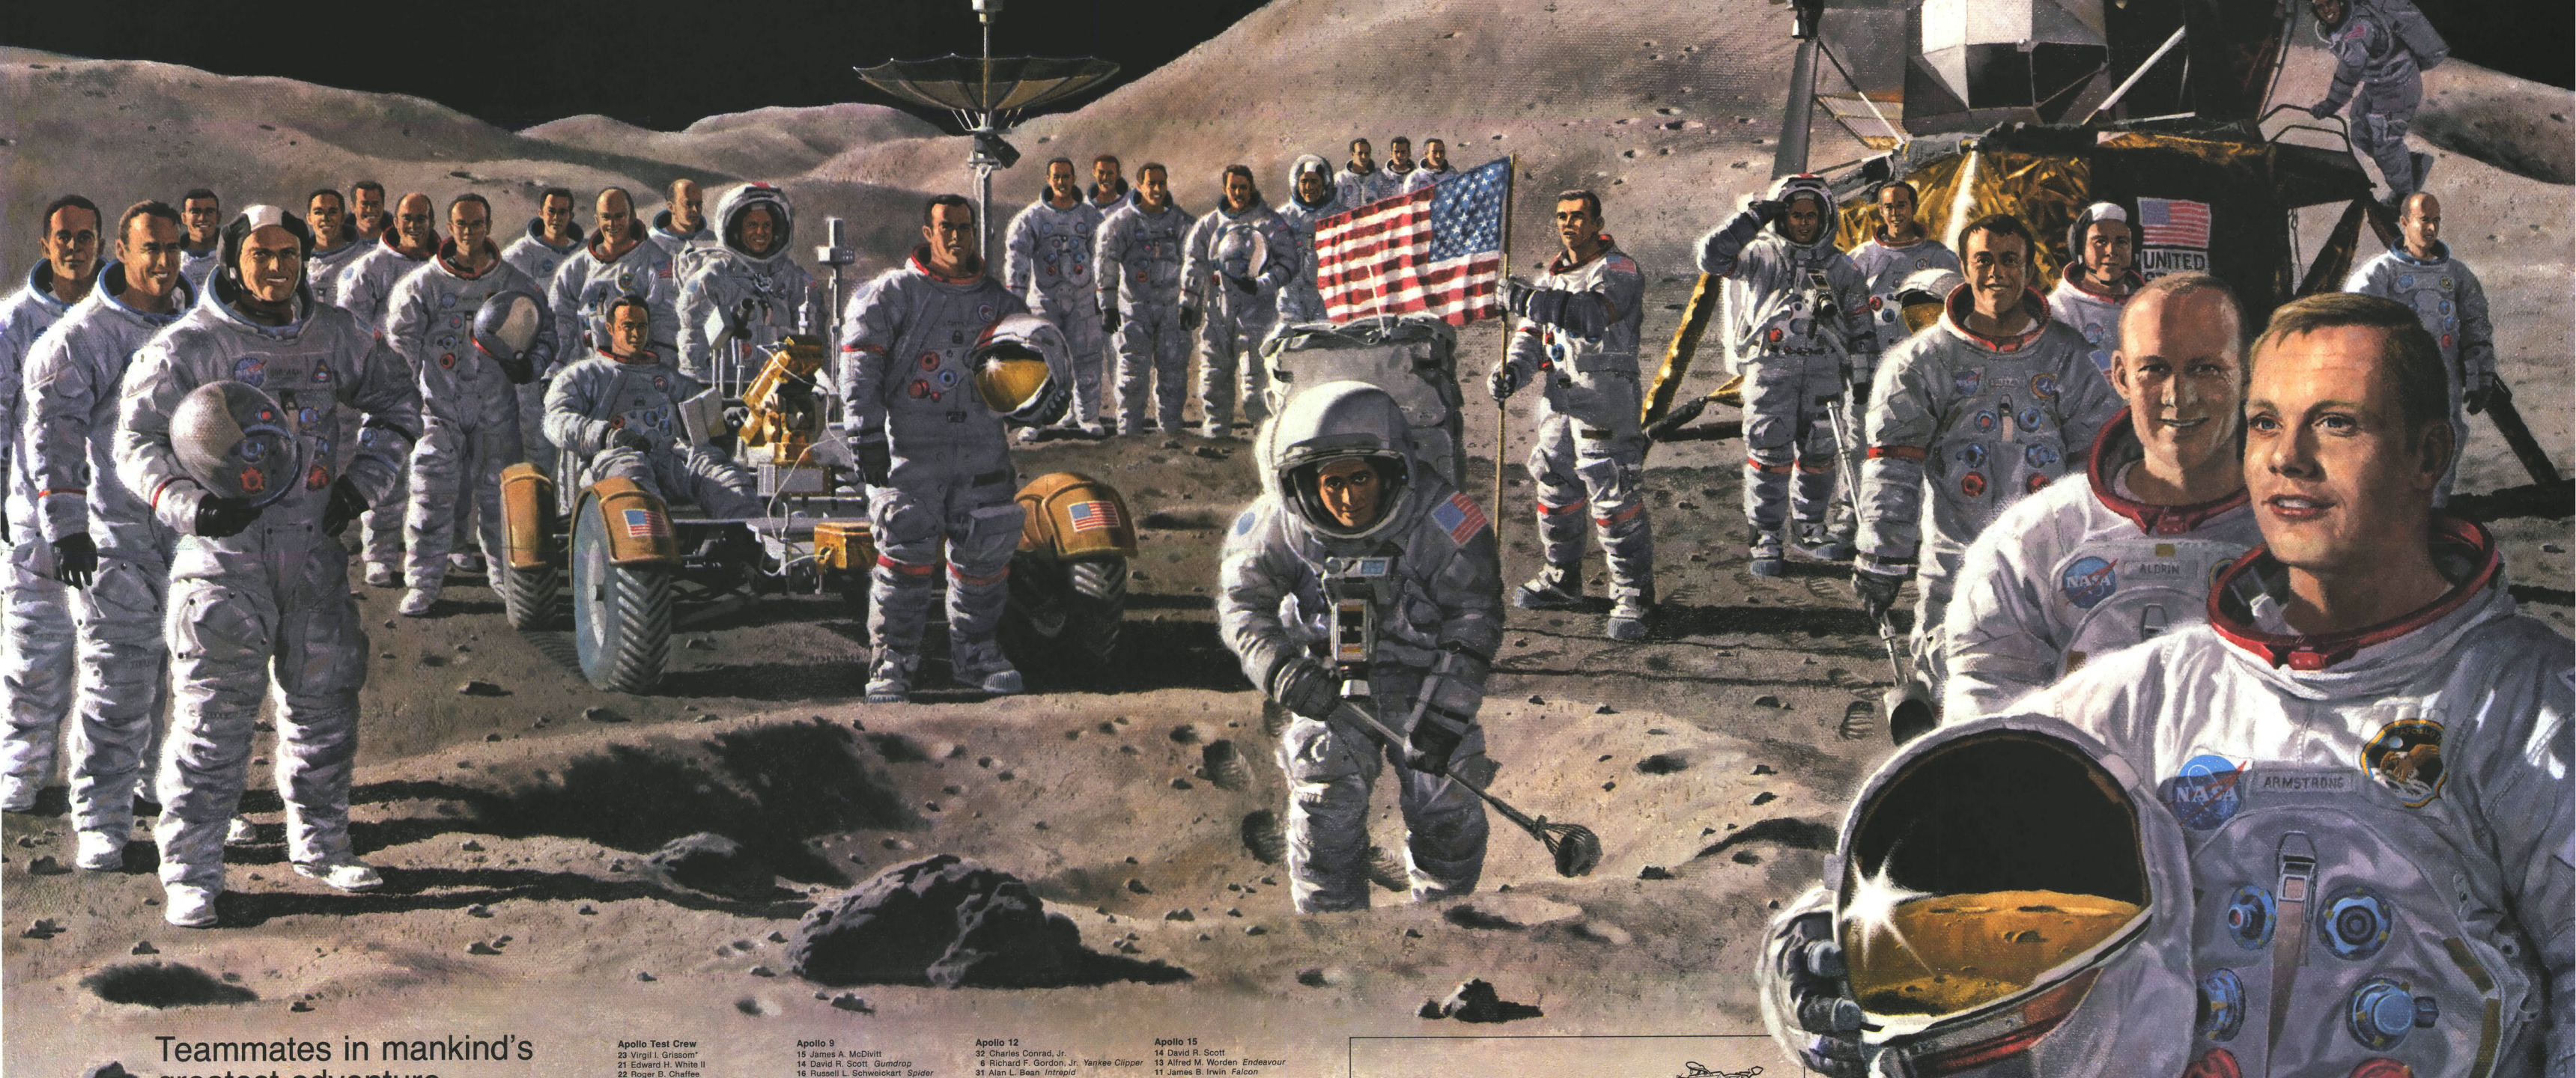 The astronauts on the moon. Роналдо в космосе на Луне.